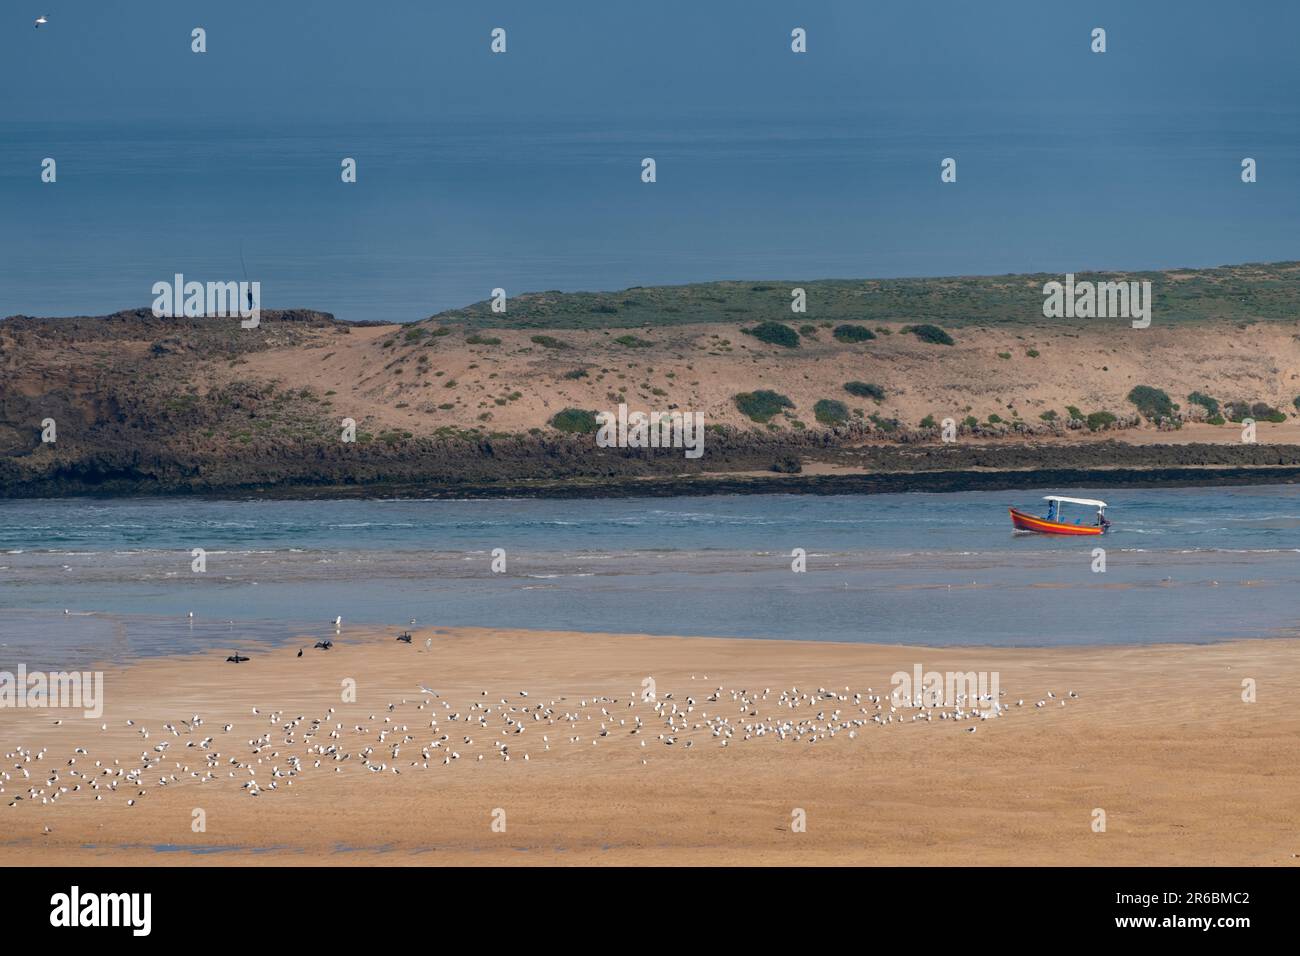 Un bateau dans le lagon à Sidi Moussa-Oualidia zones humides protégées RAMSAR près de la ville d'Oualidia au Maroc Banque D'Images